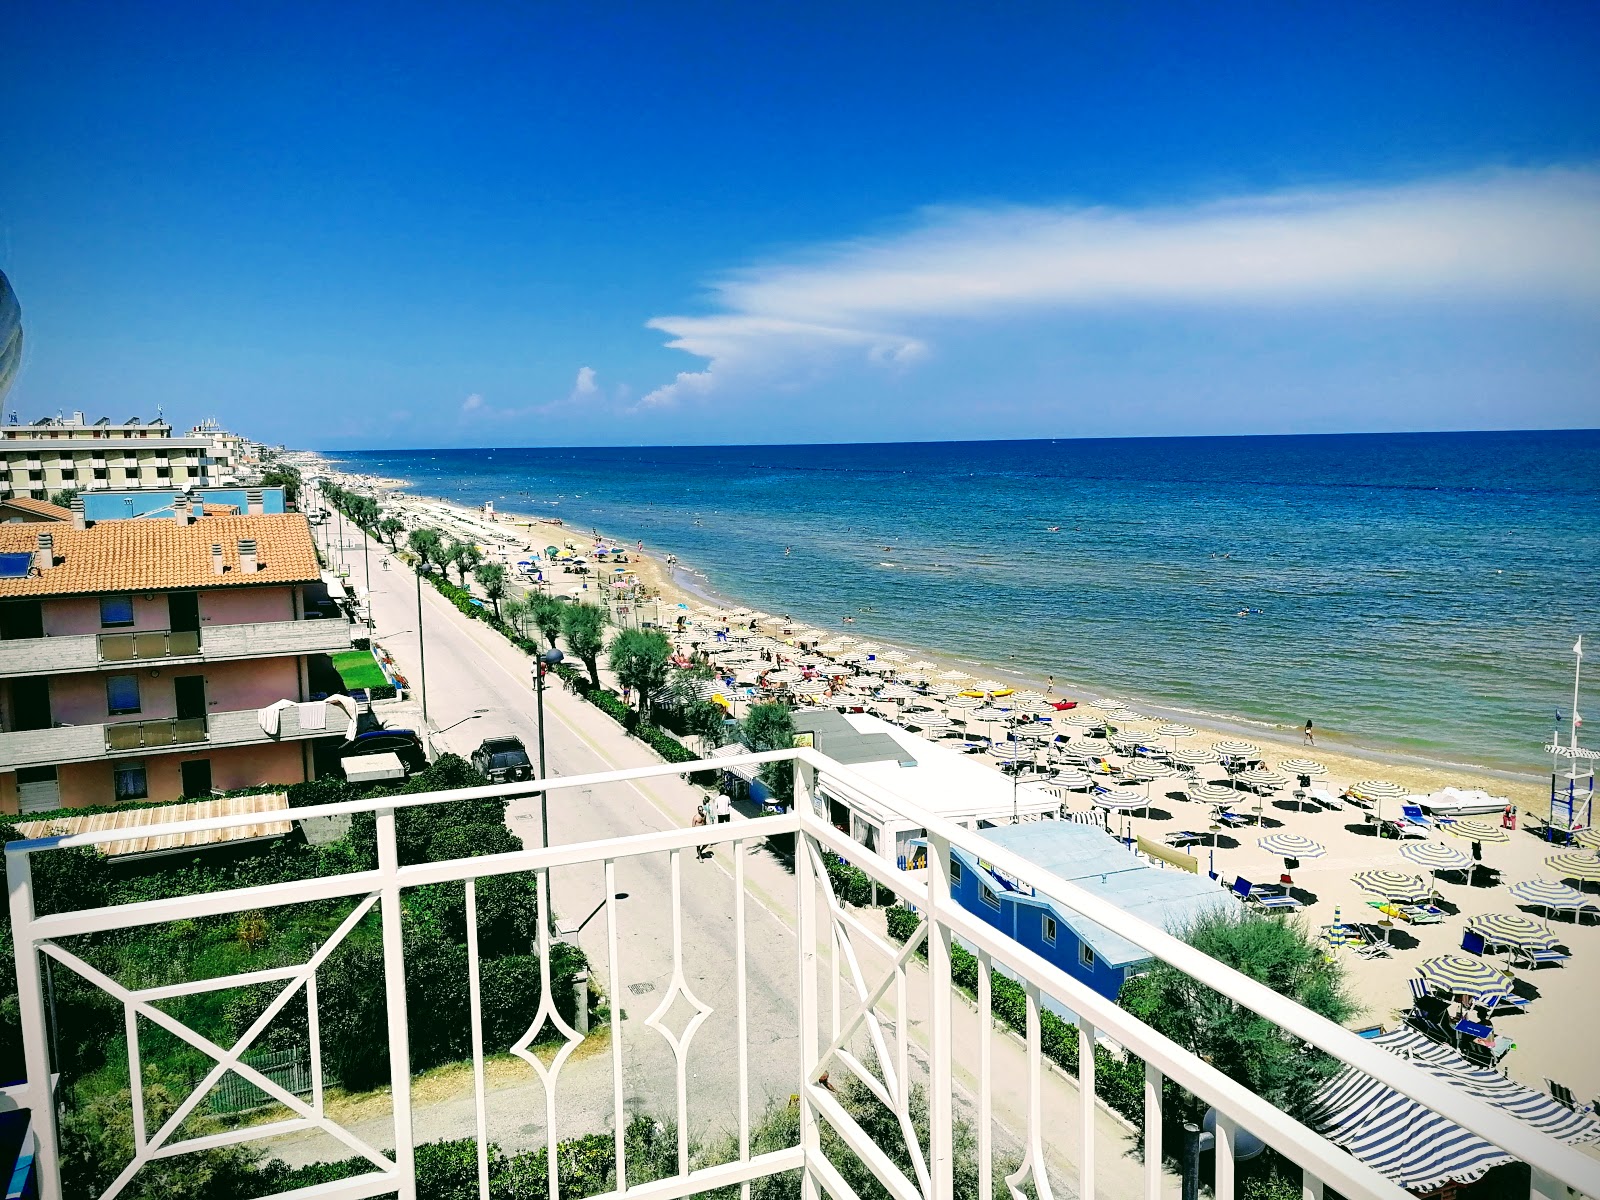 Foto de Marotta beach - lugar popular entre os apreciadores de relaxamento